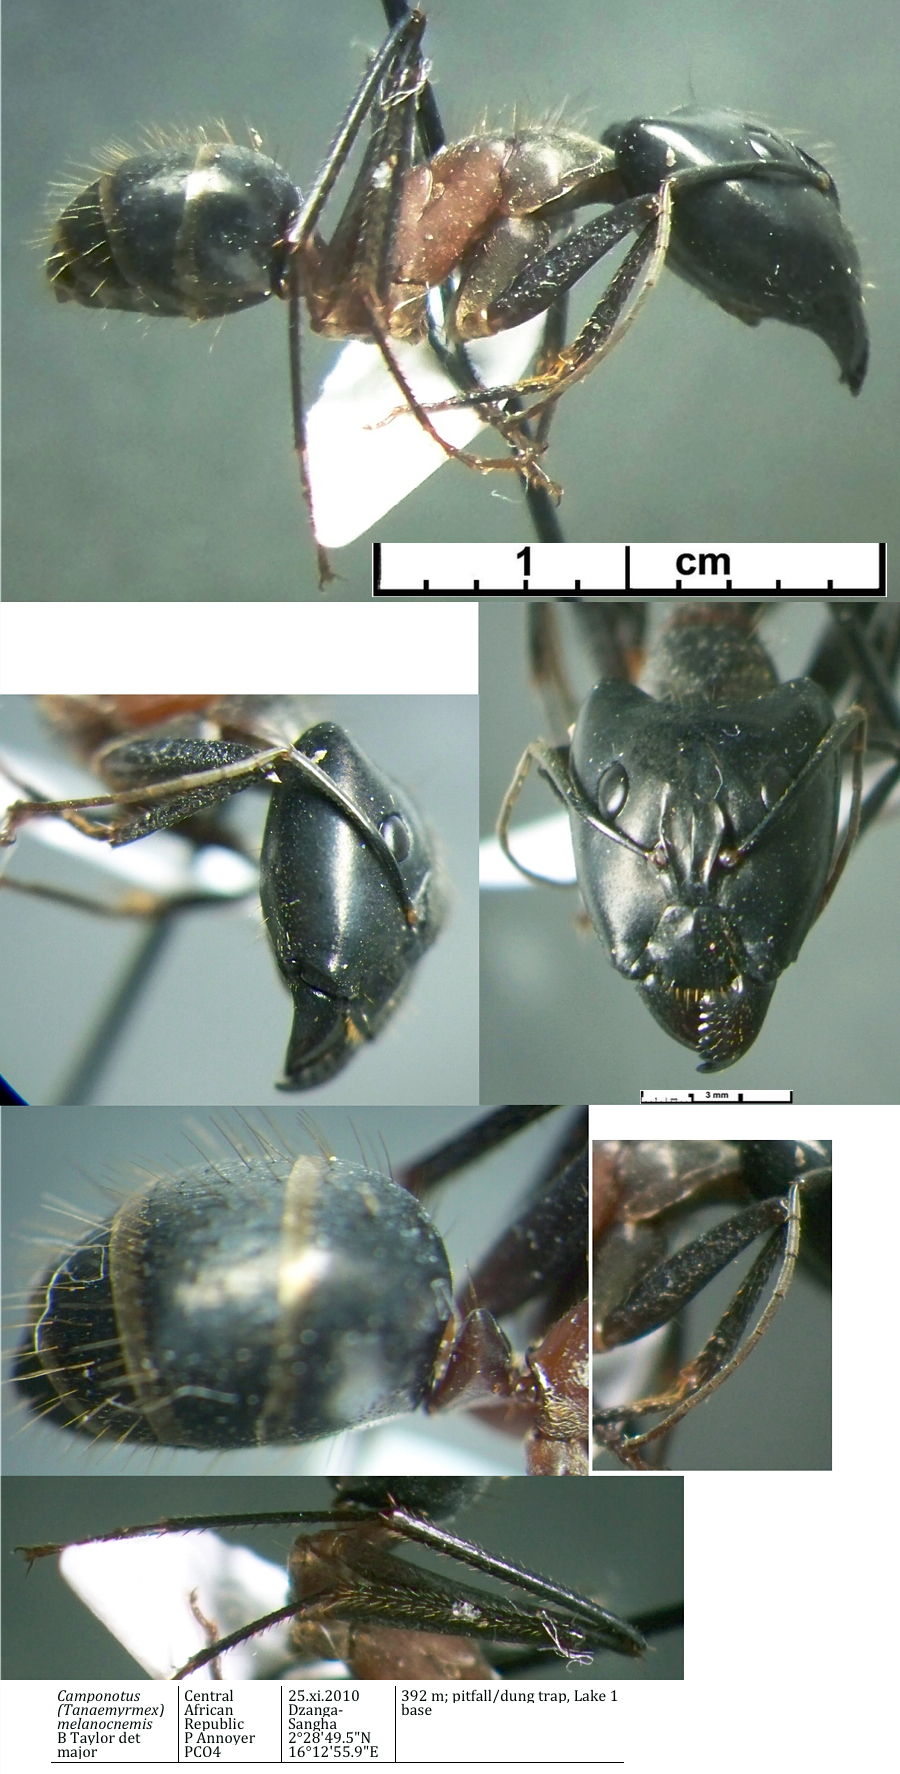 {Camponotus maculatus melanocnemis minor}